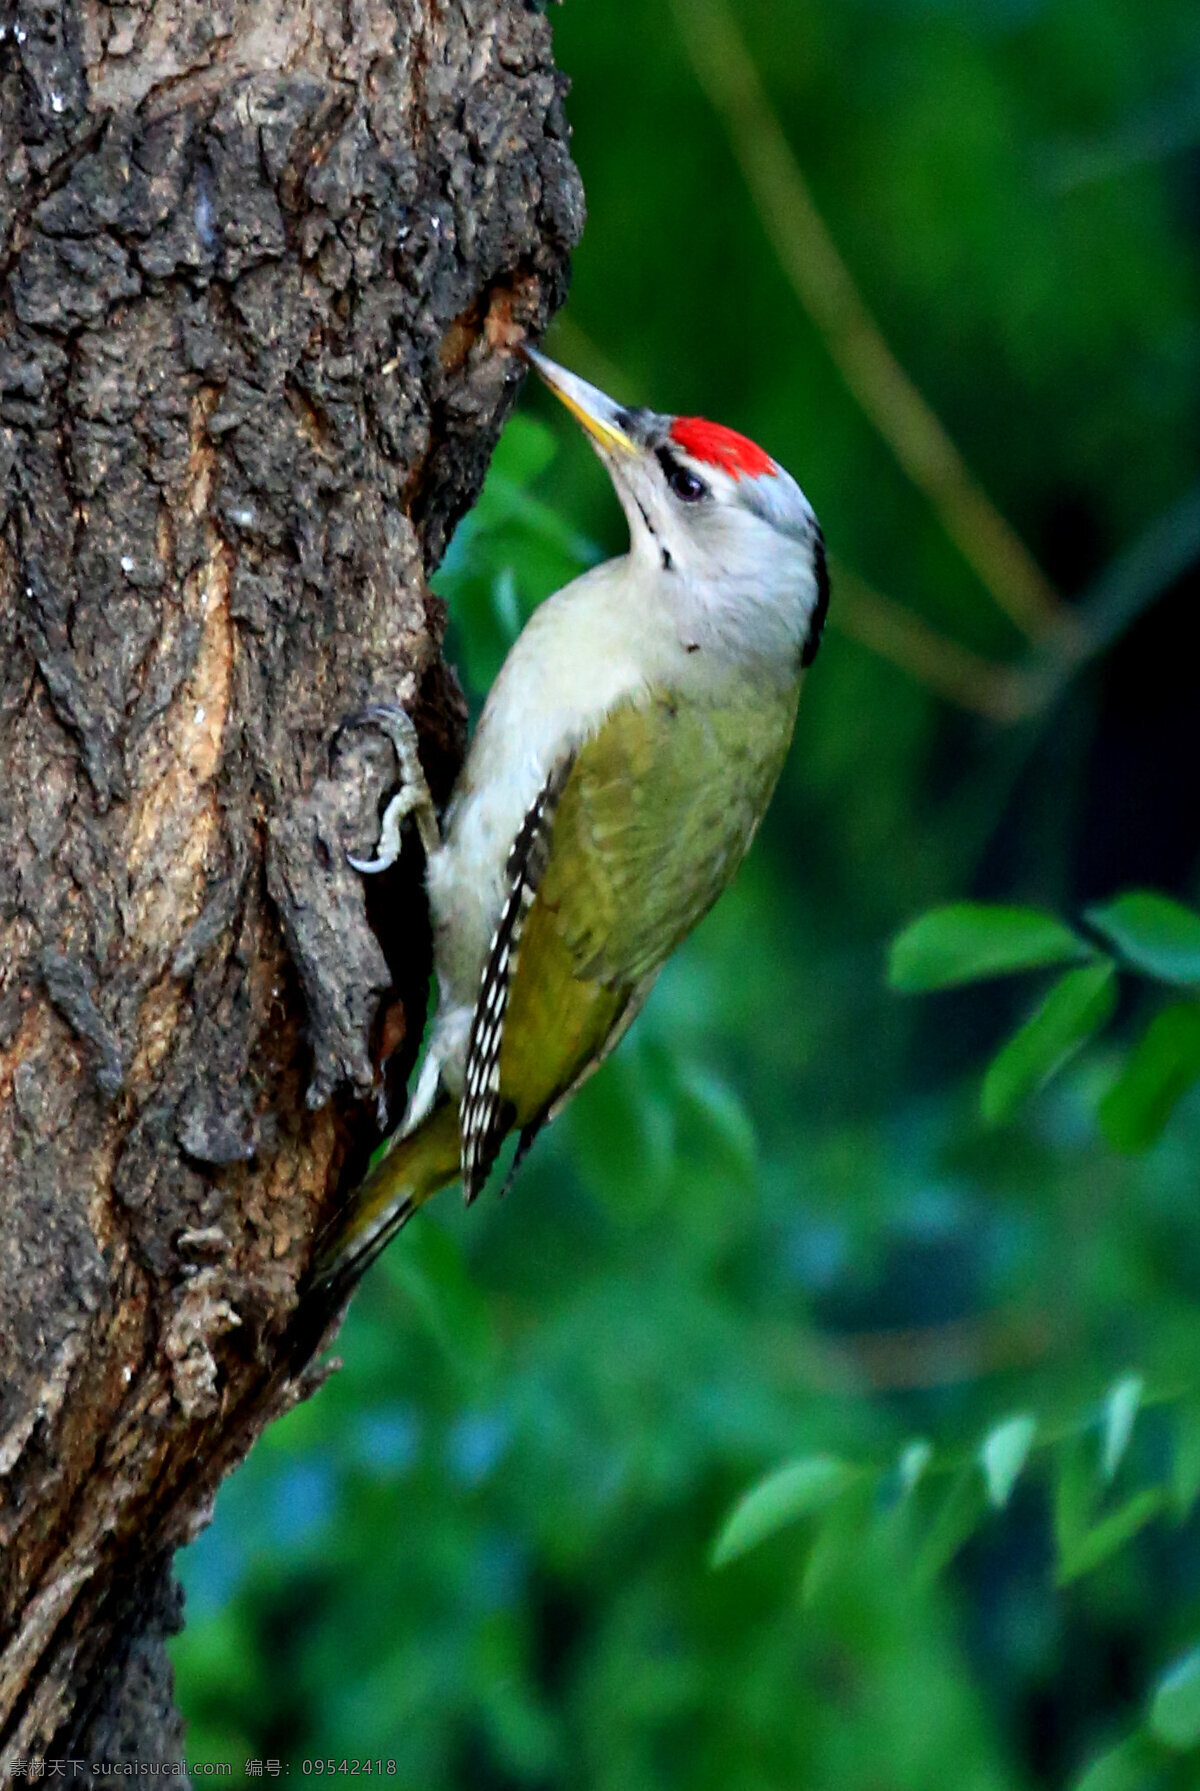 绿啄木鸟图片 绿啄木鸟 唯美 生物 动物 可爱 鸟 小鸟 飞鸟 灰头绿啄木鸟 啄木鸟 生物世界 鸟类